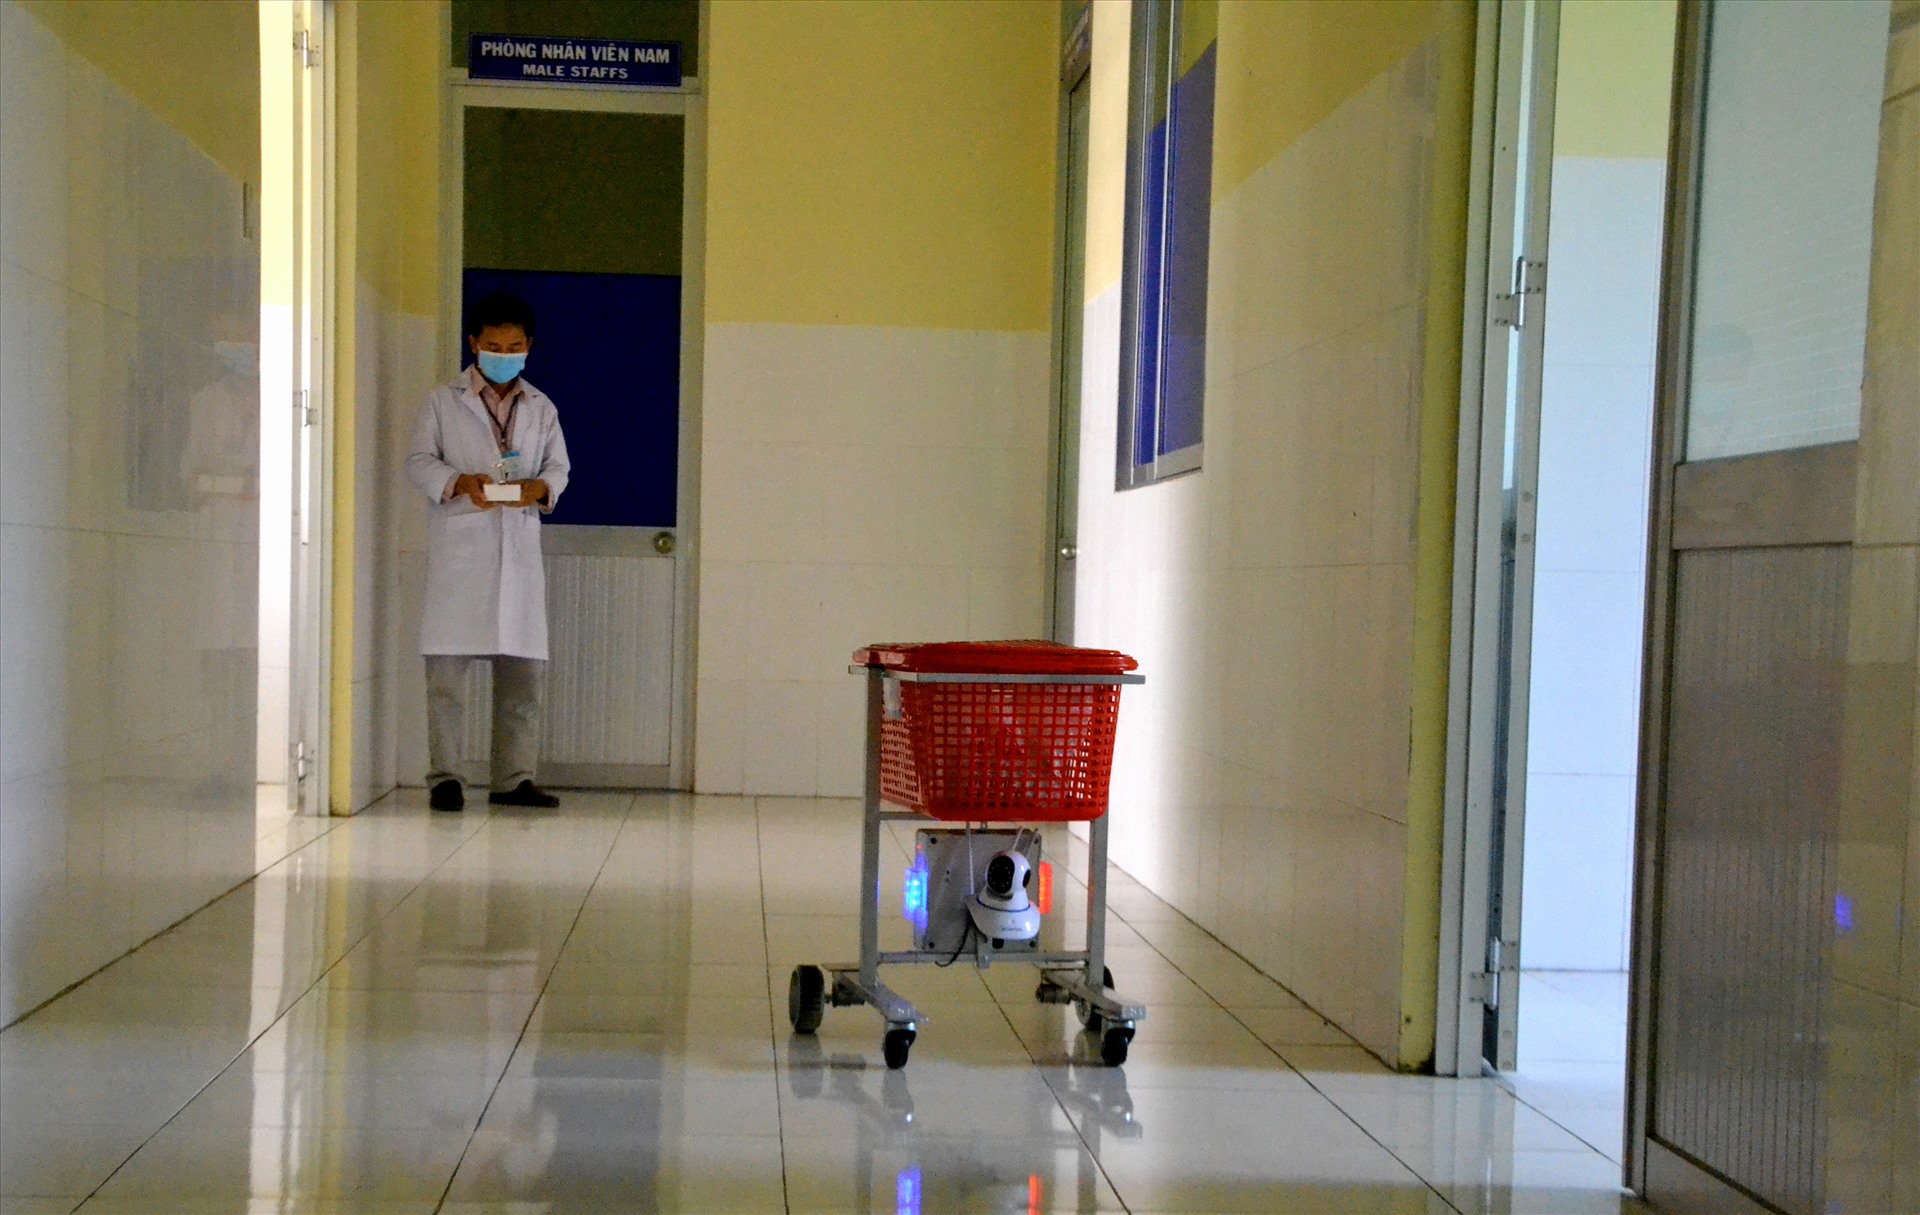 Thông qua điều khiển từ xa, điều hành robot mang vật dụng đến tận cửa phòng bệnh nhân. Ảnh: LT